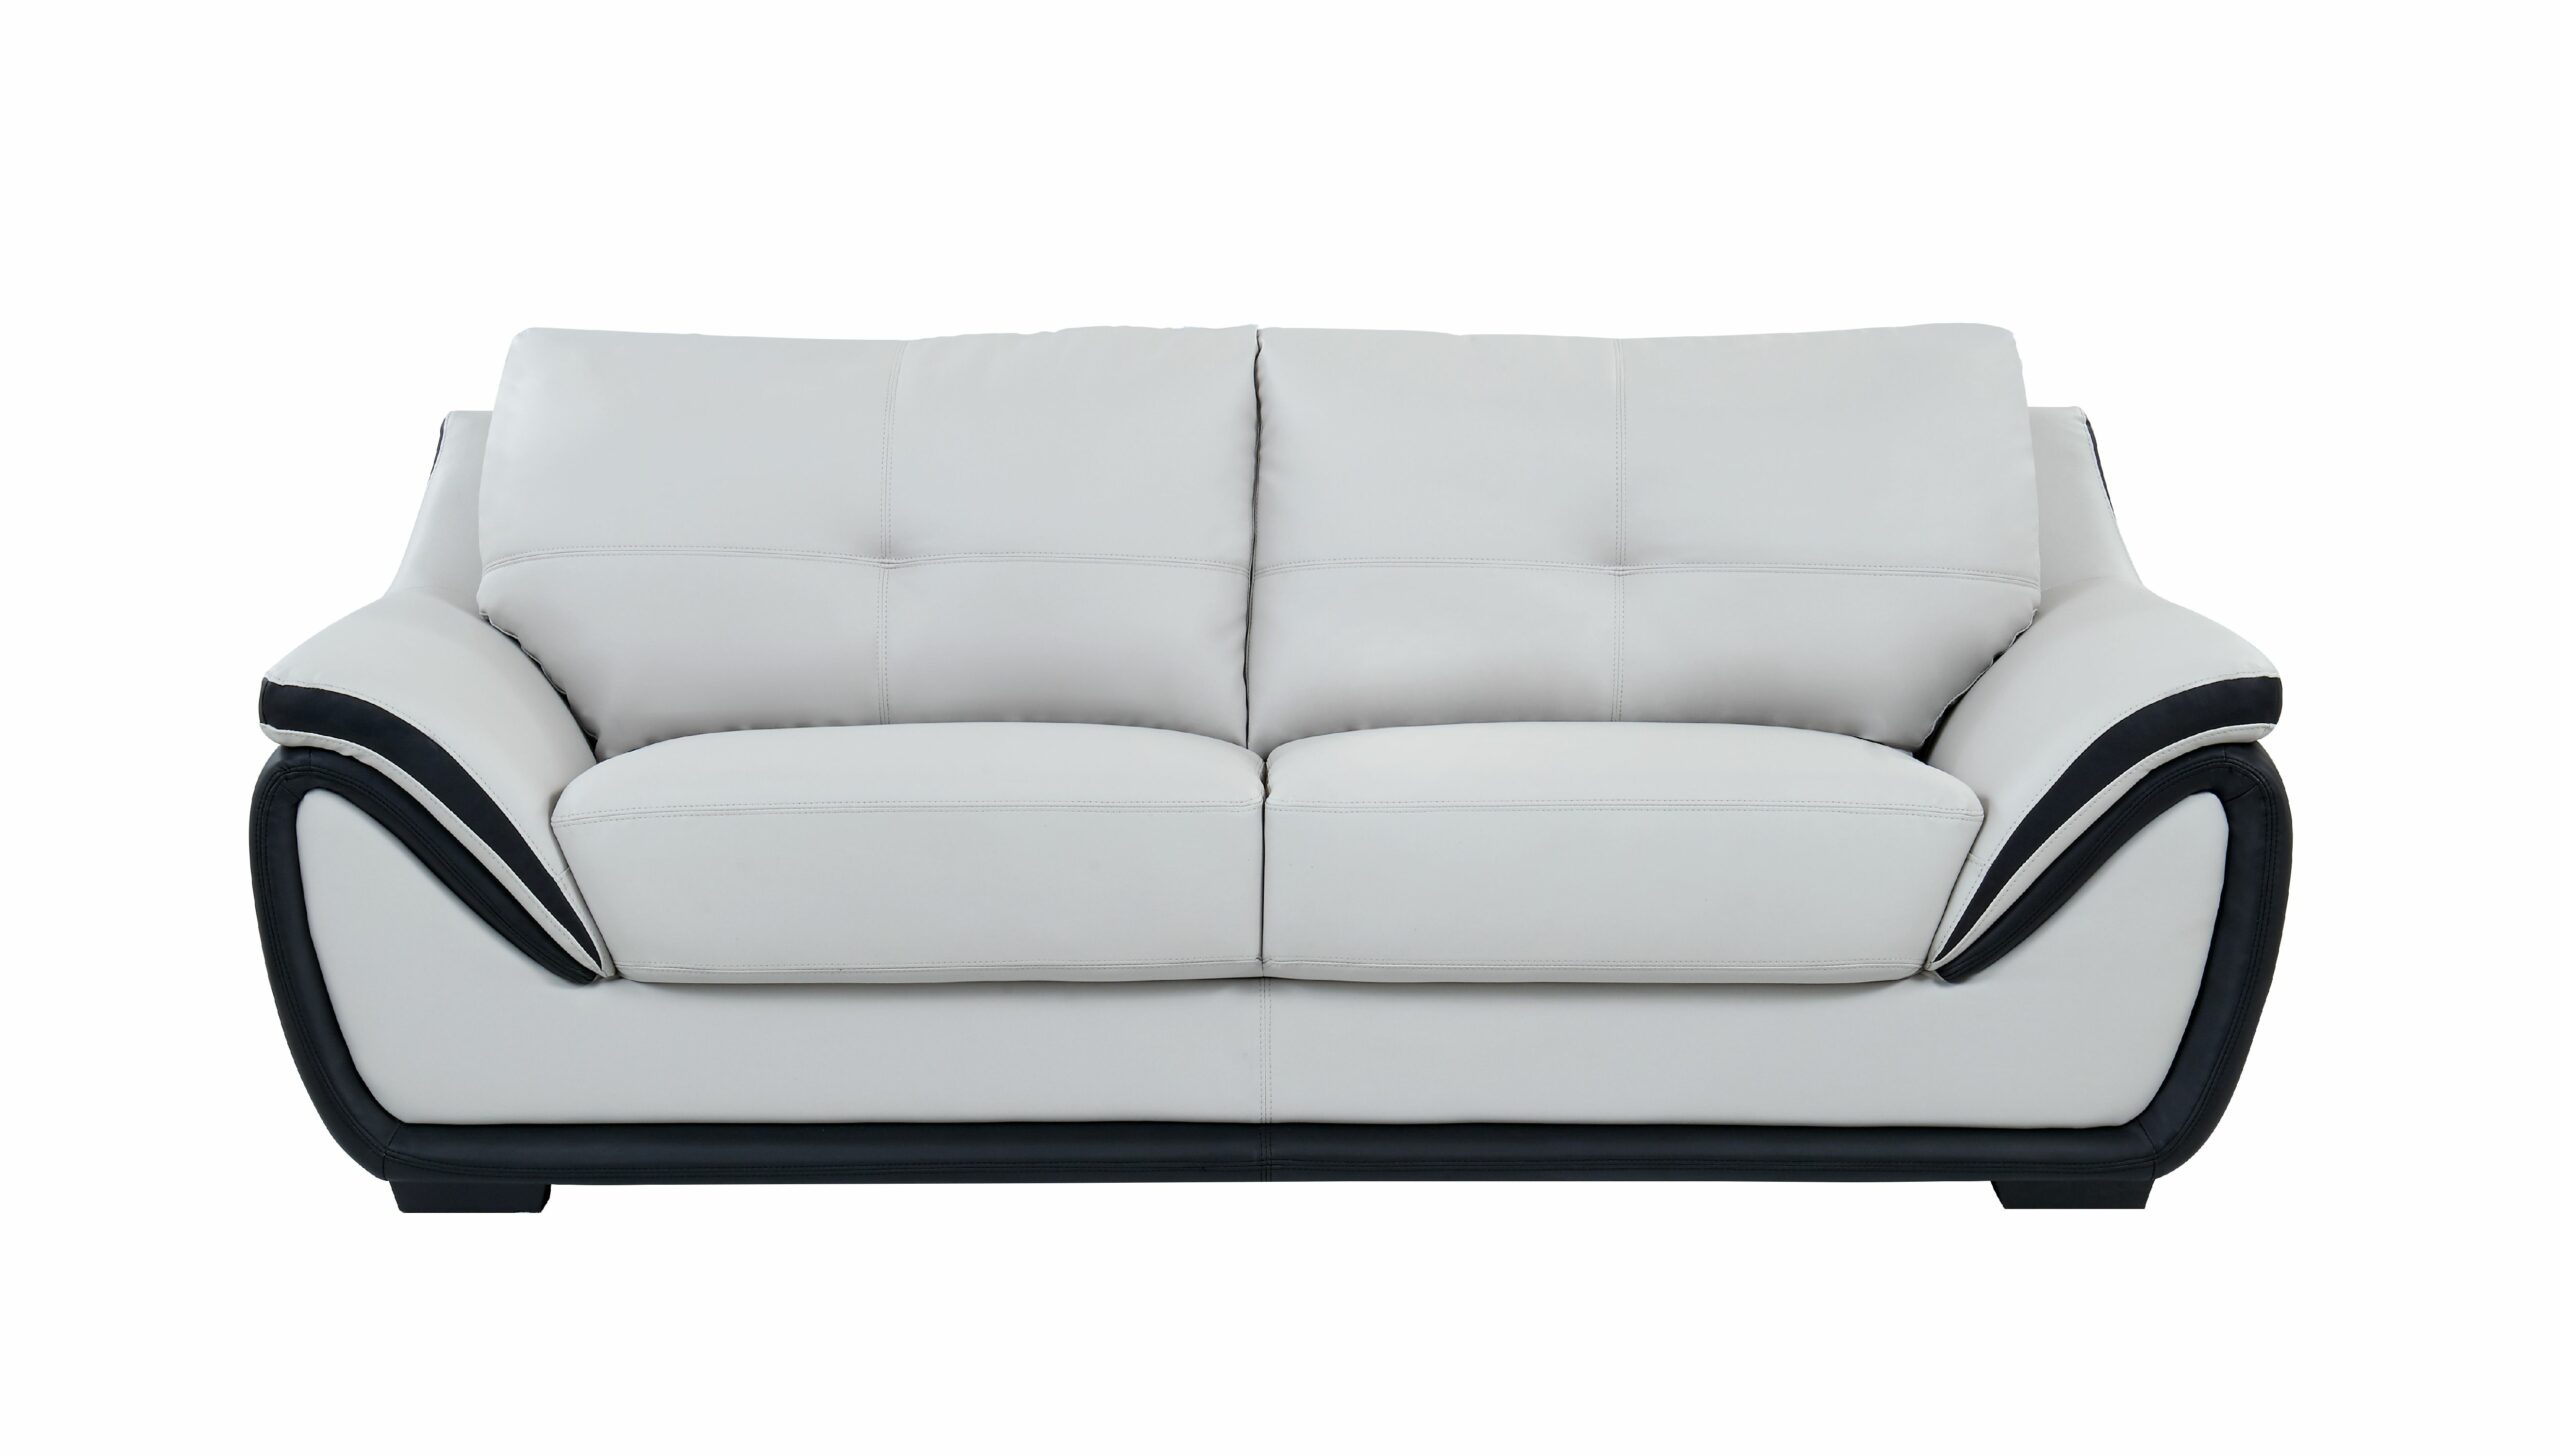 classic sofa design